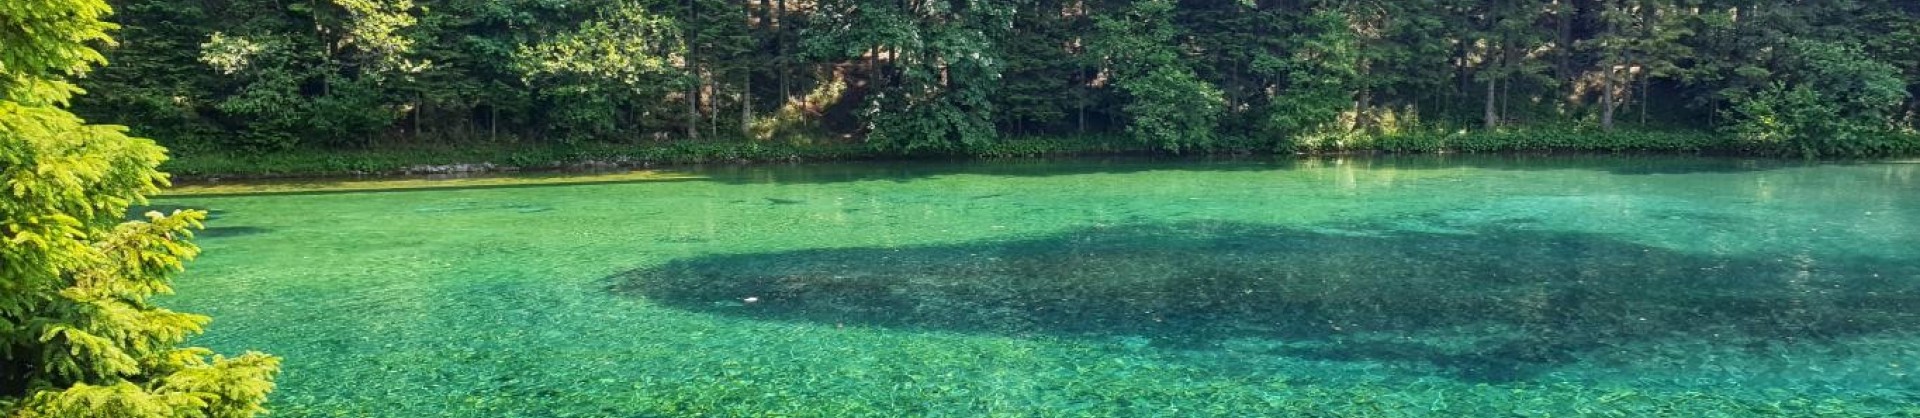 Javornisko jezero jezera slovenije slovenska jezera moja jezera manca korelc 1 sl